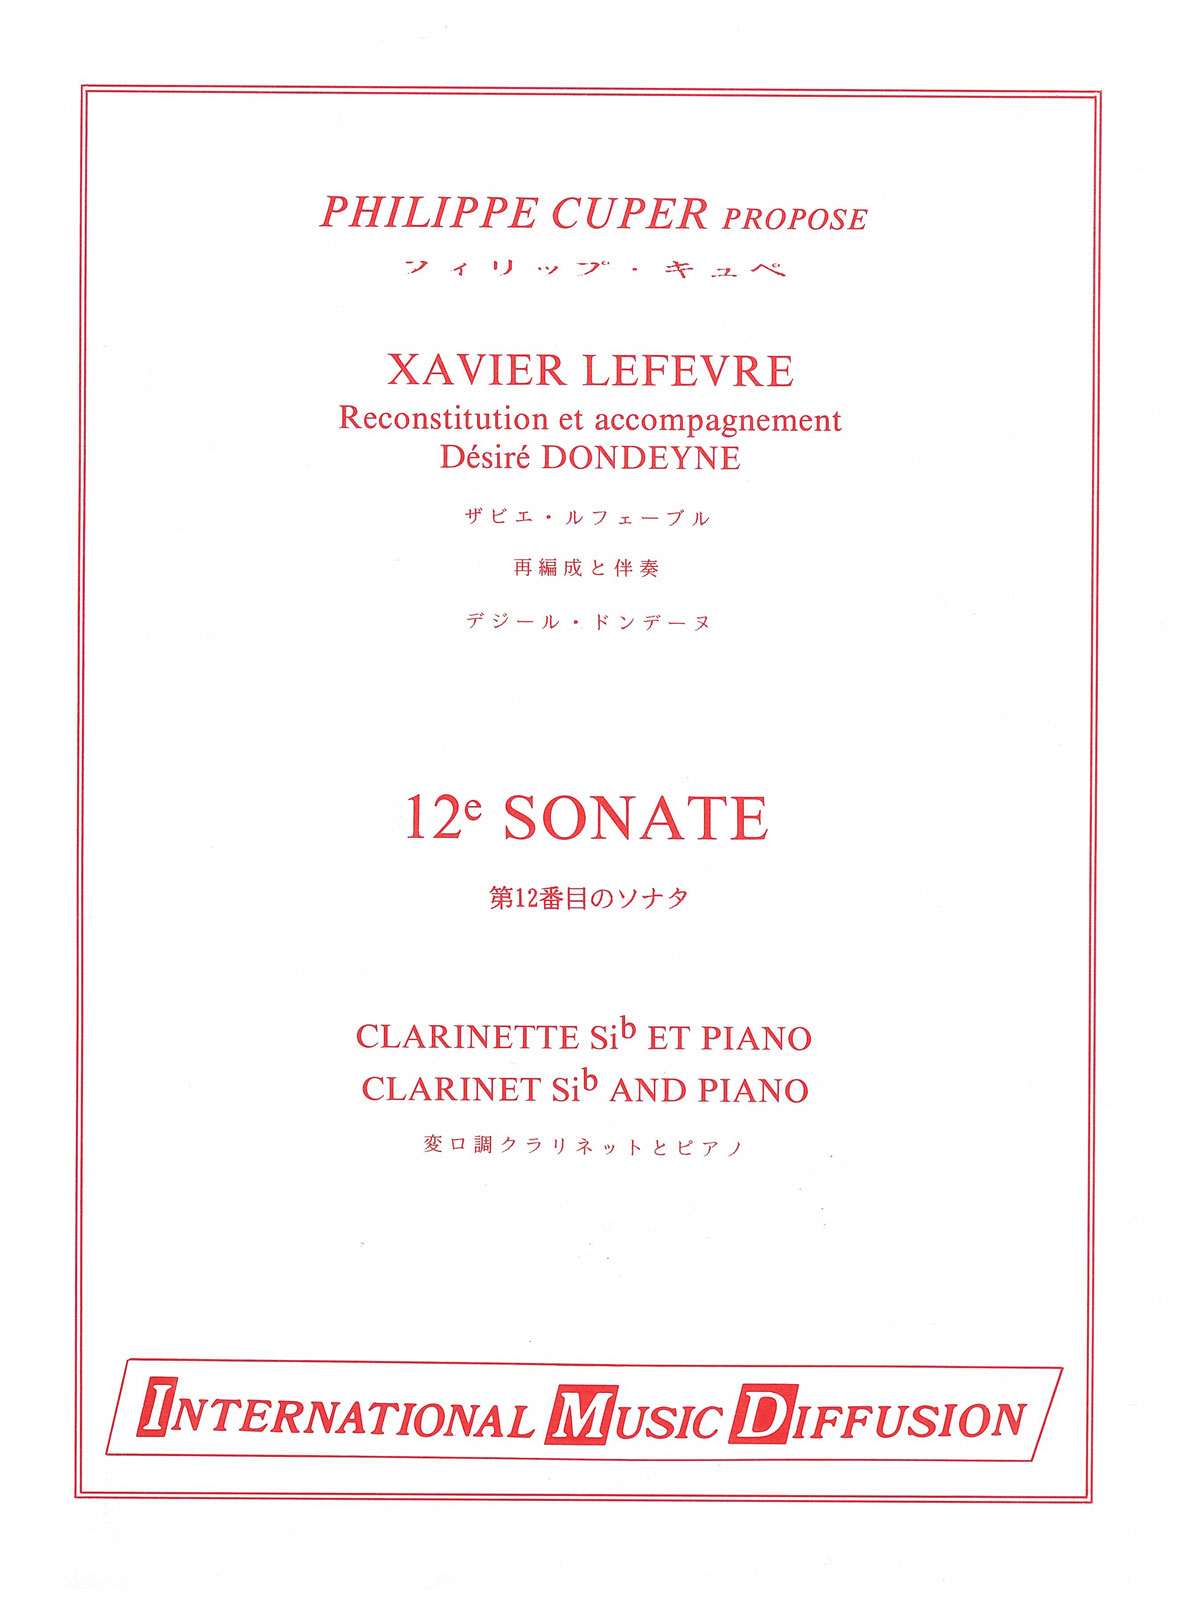 IMD ARPEGES LEFEVRE - 12° SONATE - CLARINETTE & PIANO